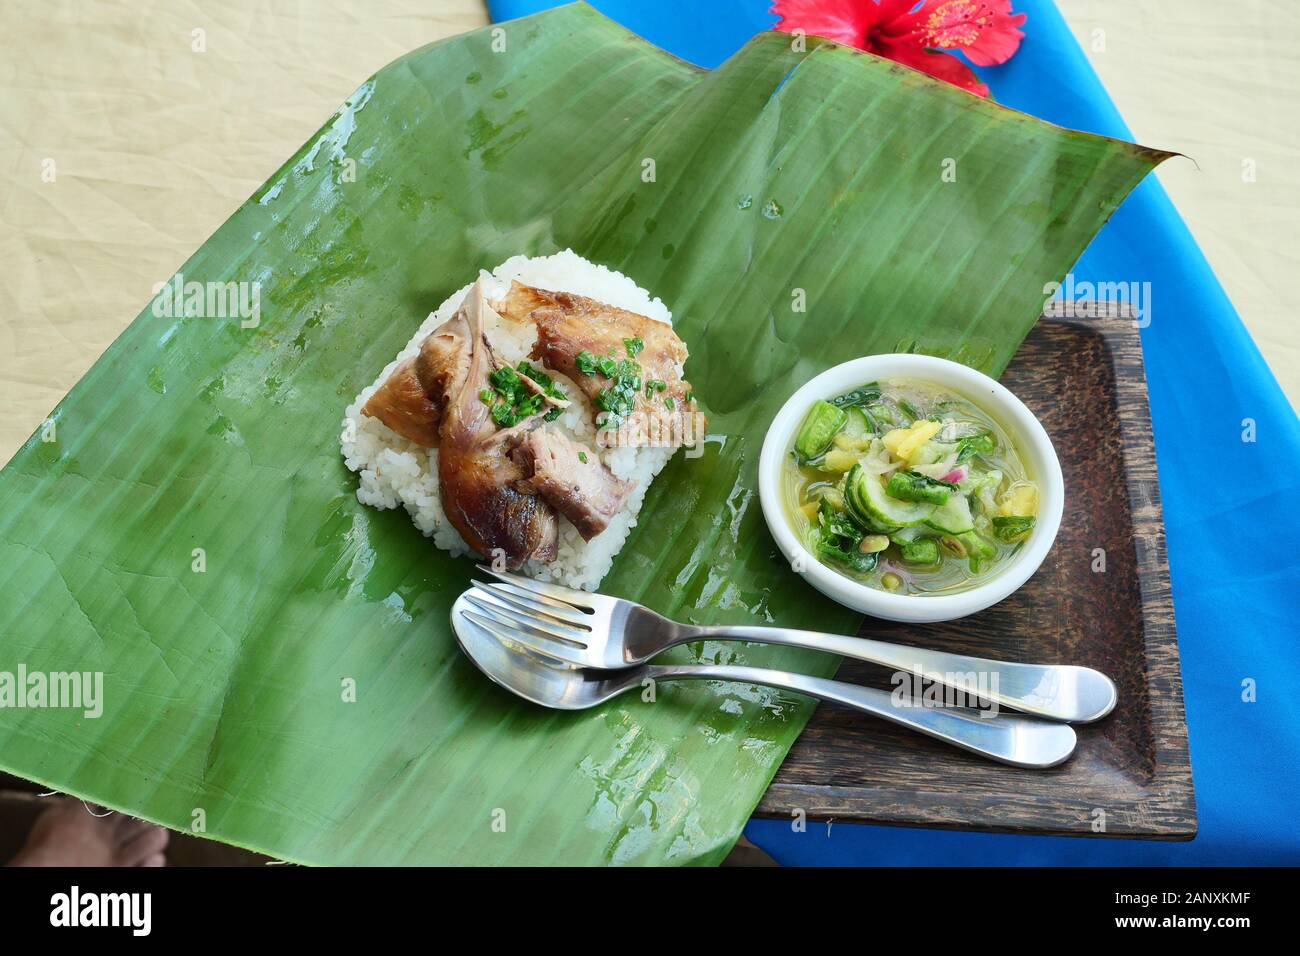 Il riso condito con pollo grigliato con cucchiaio e forchetta su verde foglia di banano, salsa a base di peperoncino, sale e limone e ananas in piatto bianco Foto Stock